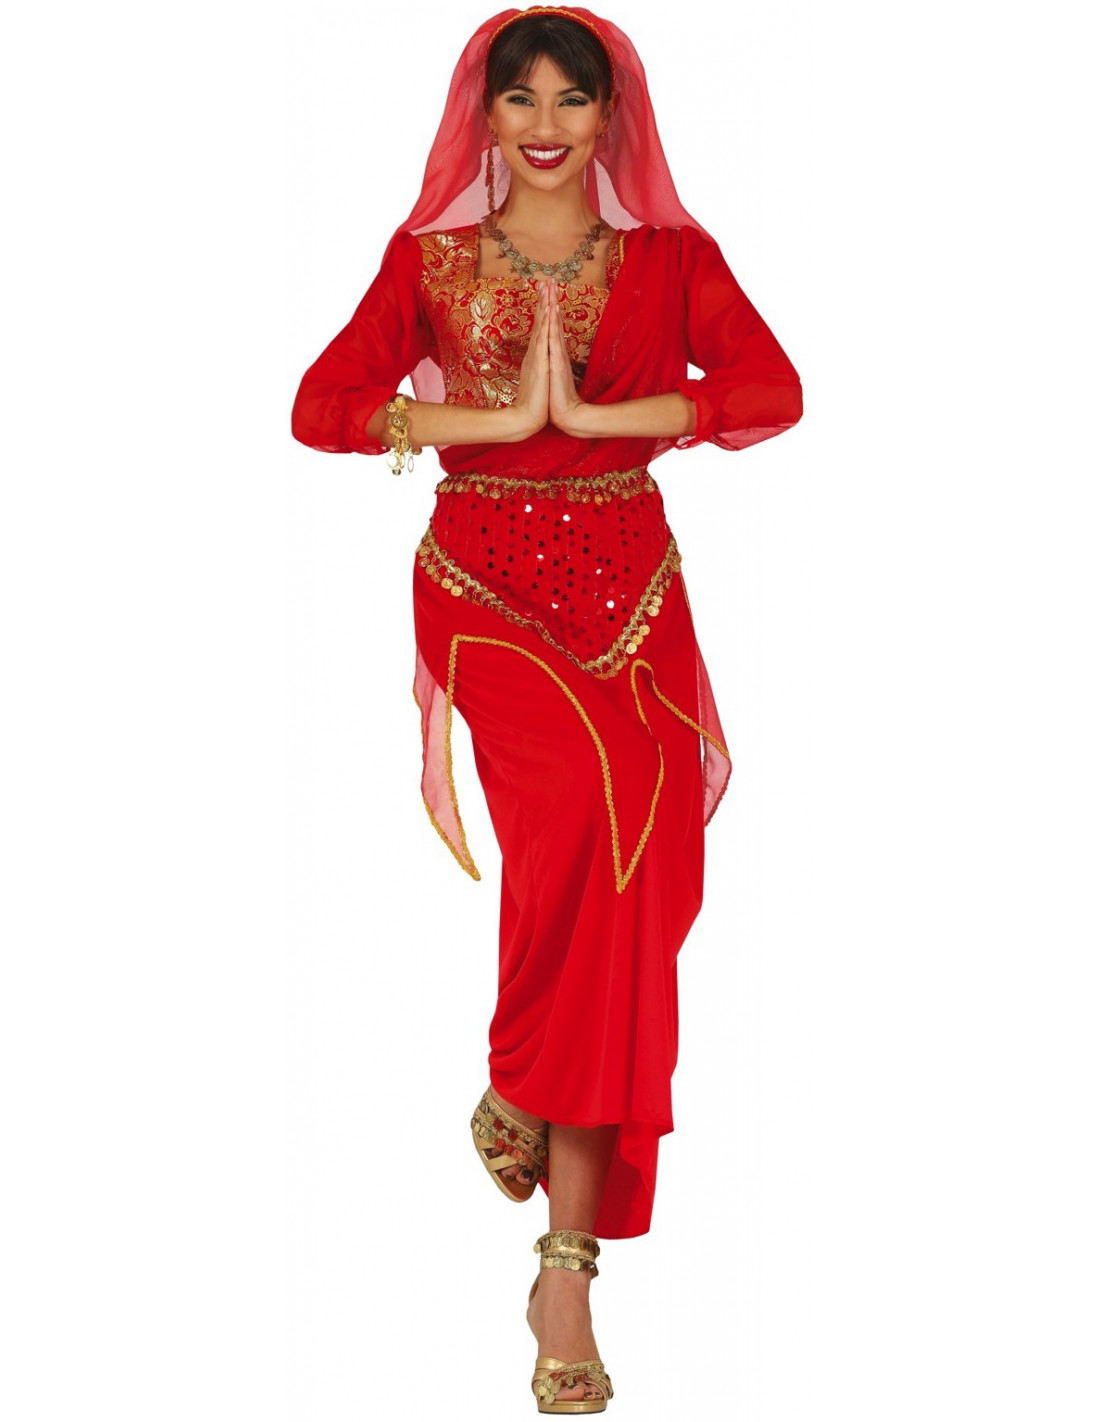 Disfraz de Hindú Bollywood para mujer